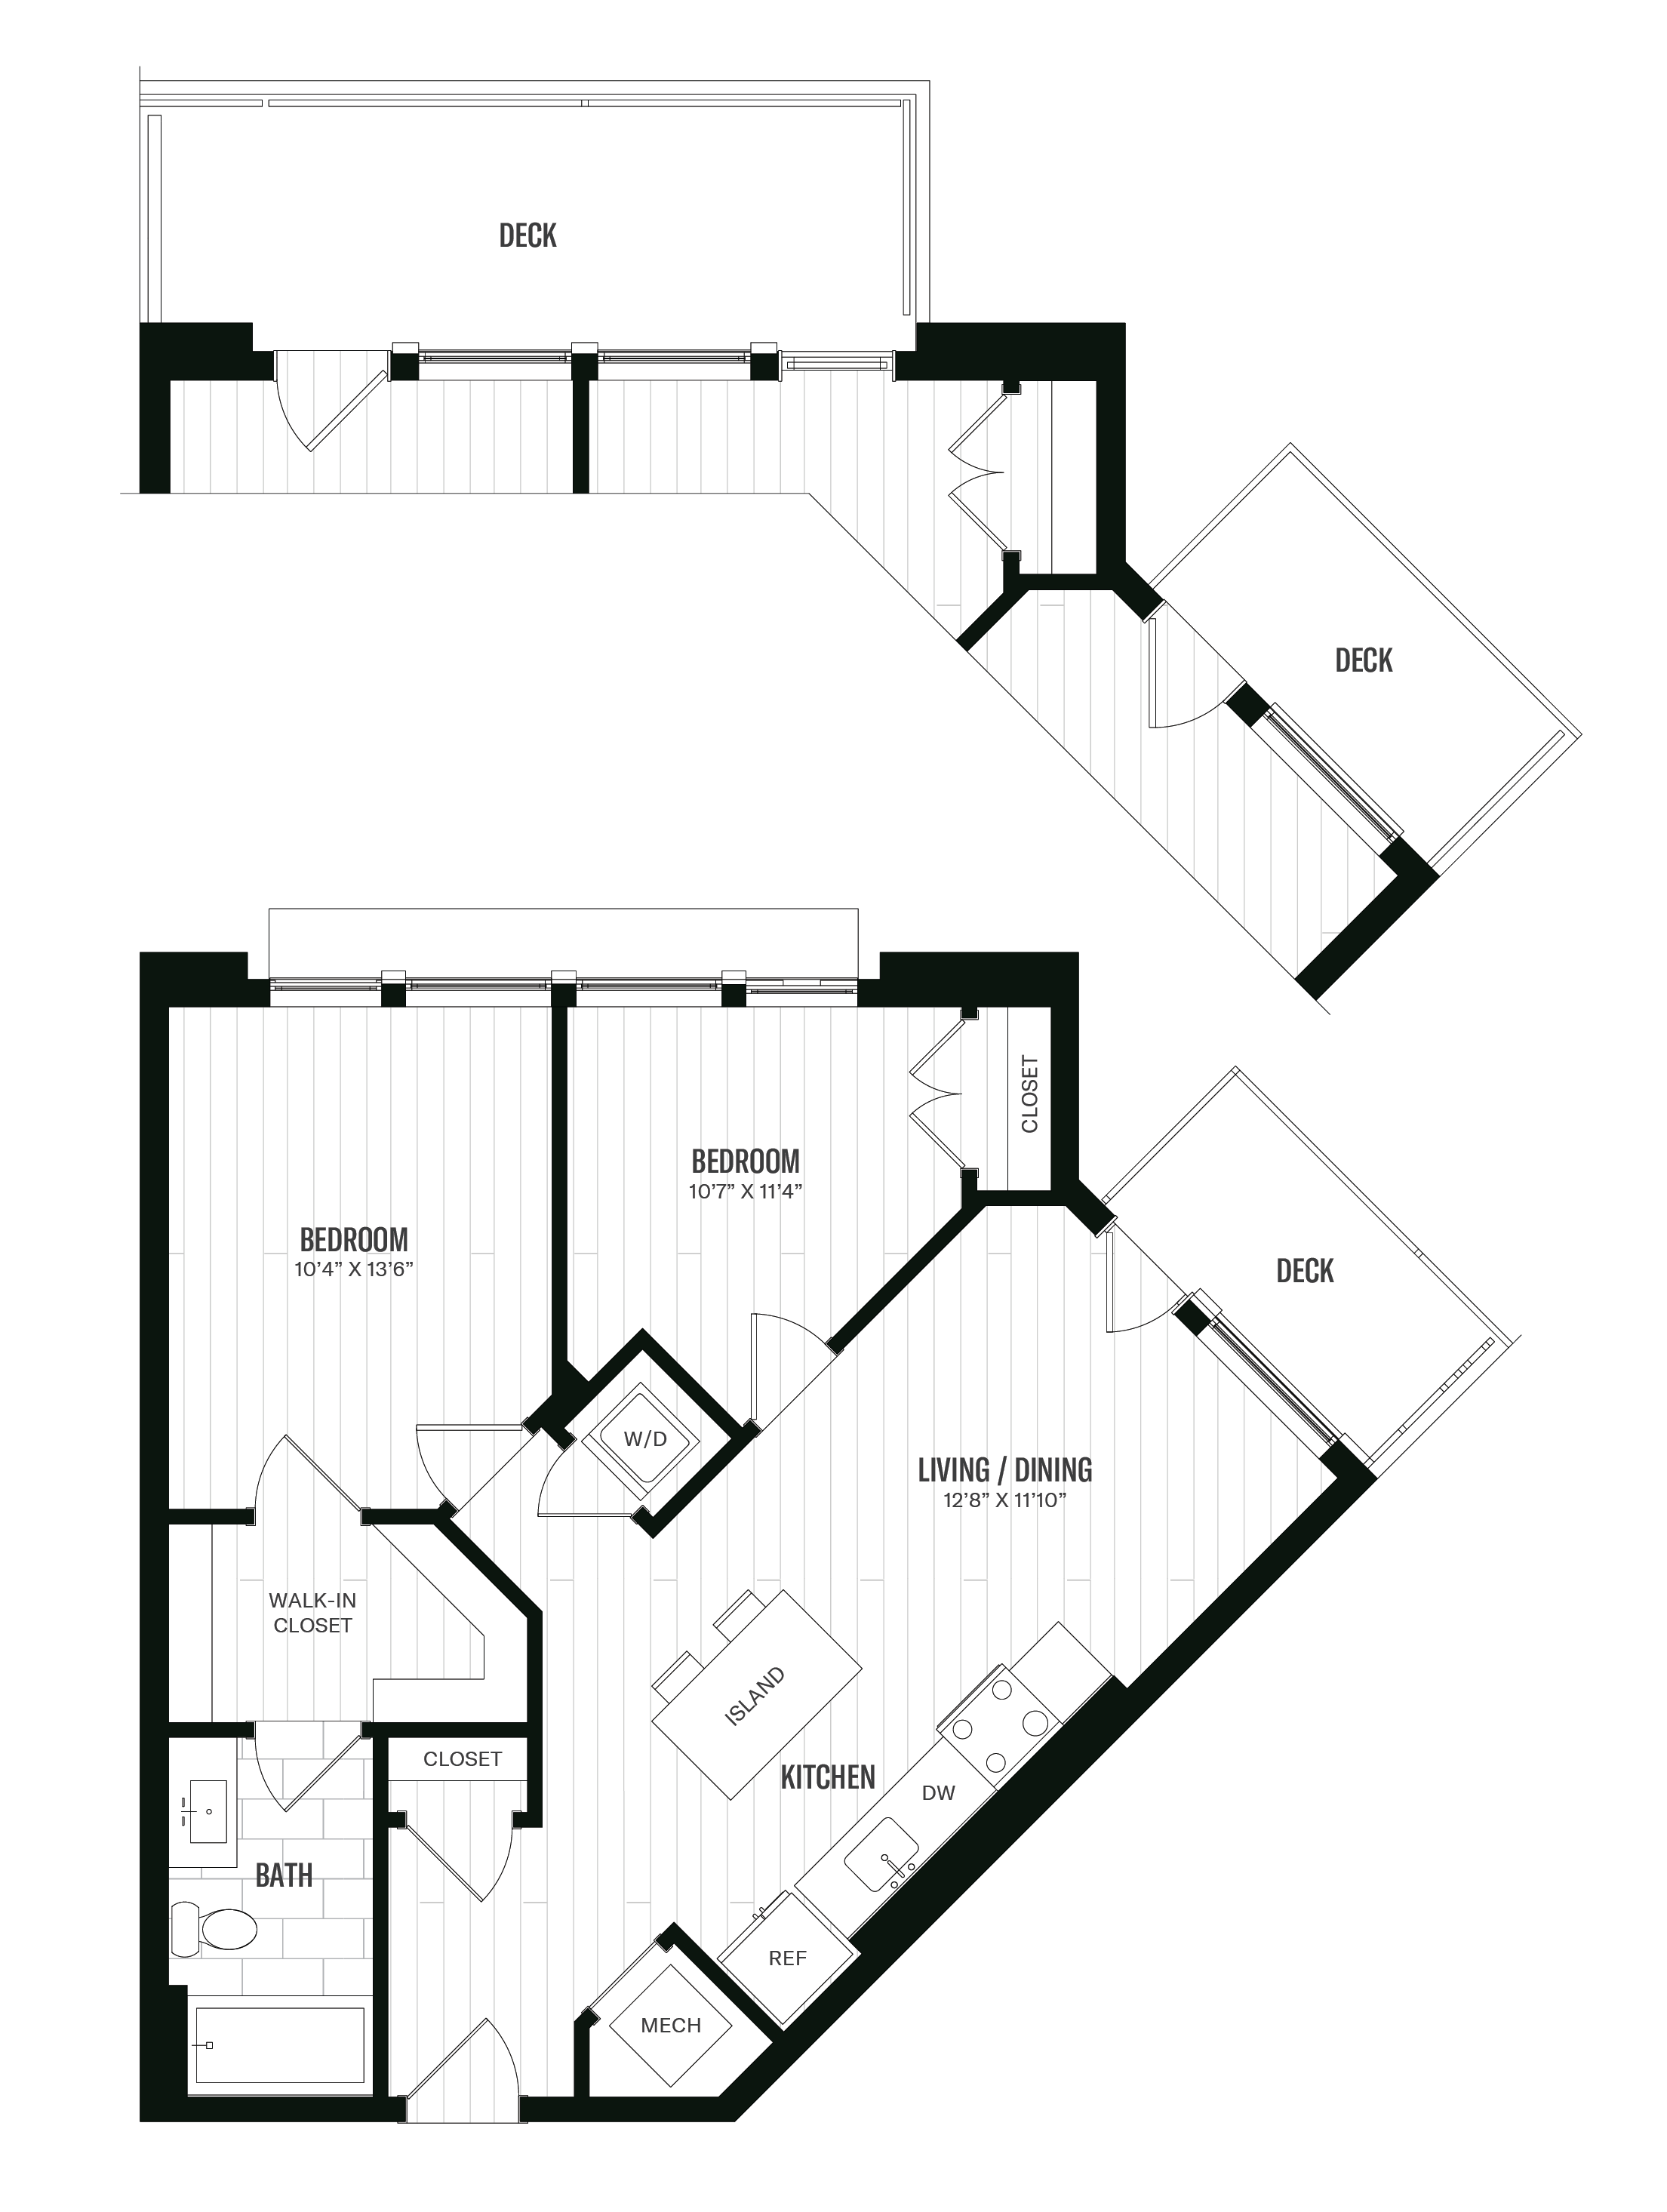 Floorplan image of unit 514